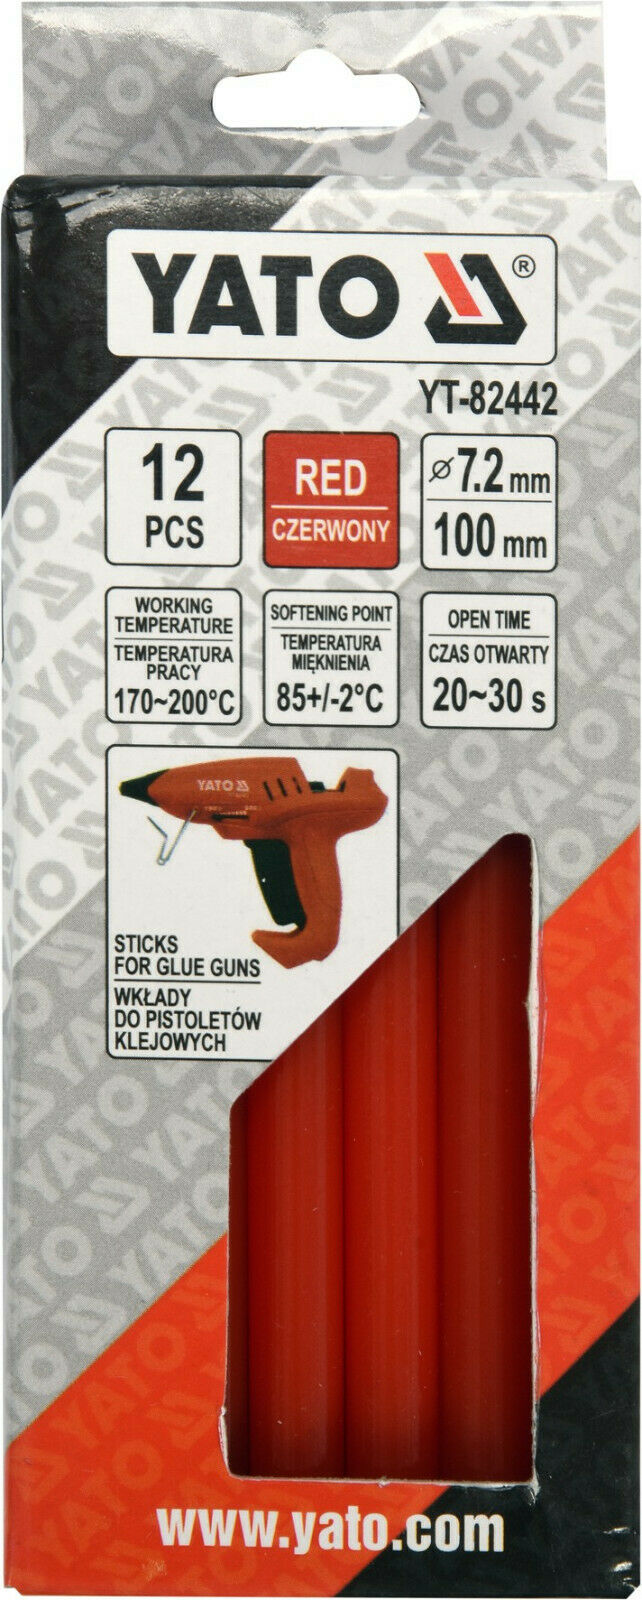 Yato YT-82442 Heißklebesticks rot Heißklebepistole Heißkleber Klebesticks